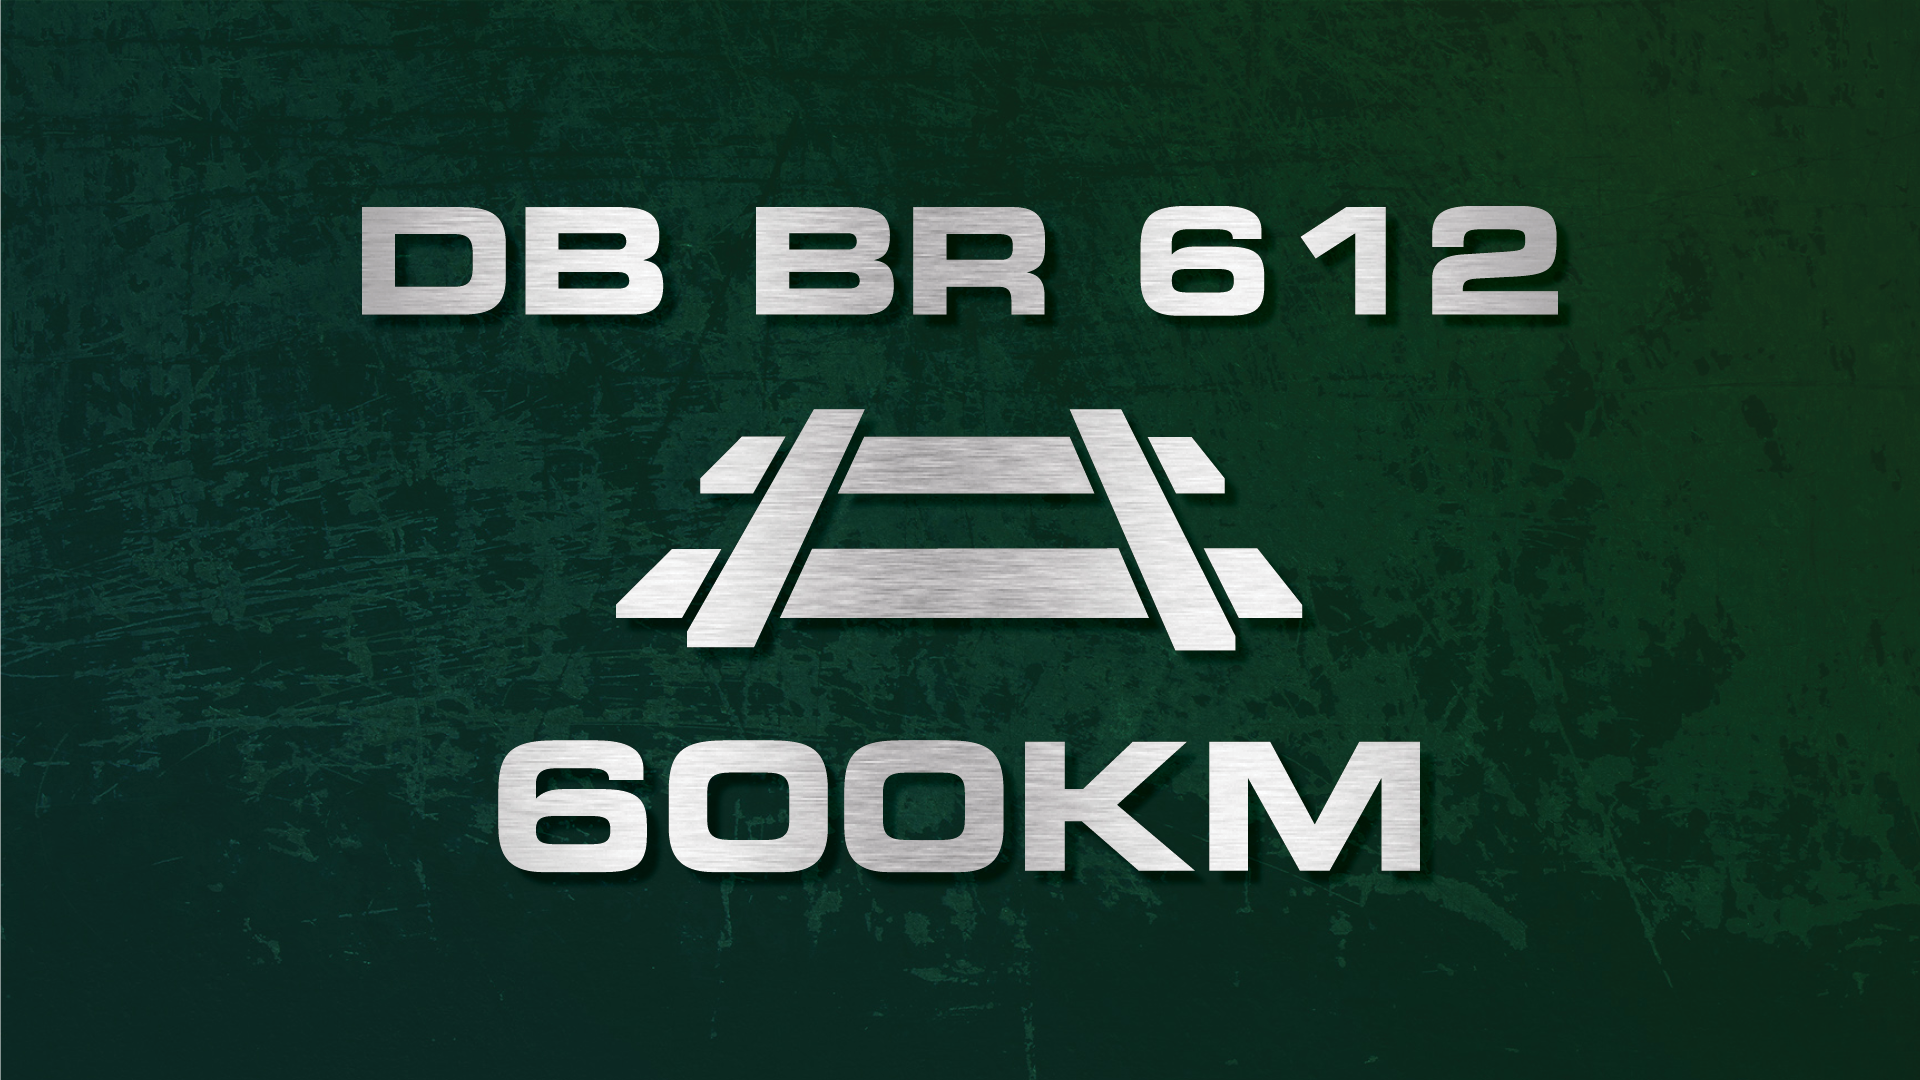 Icon for BR 612: Regional Runner